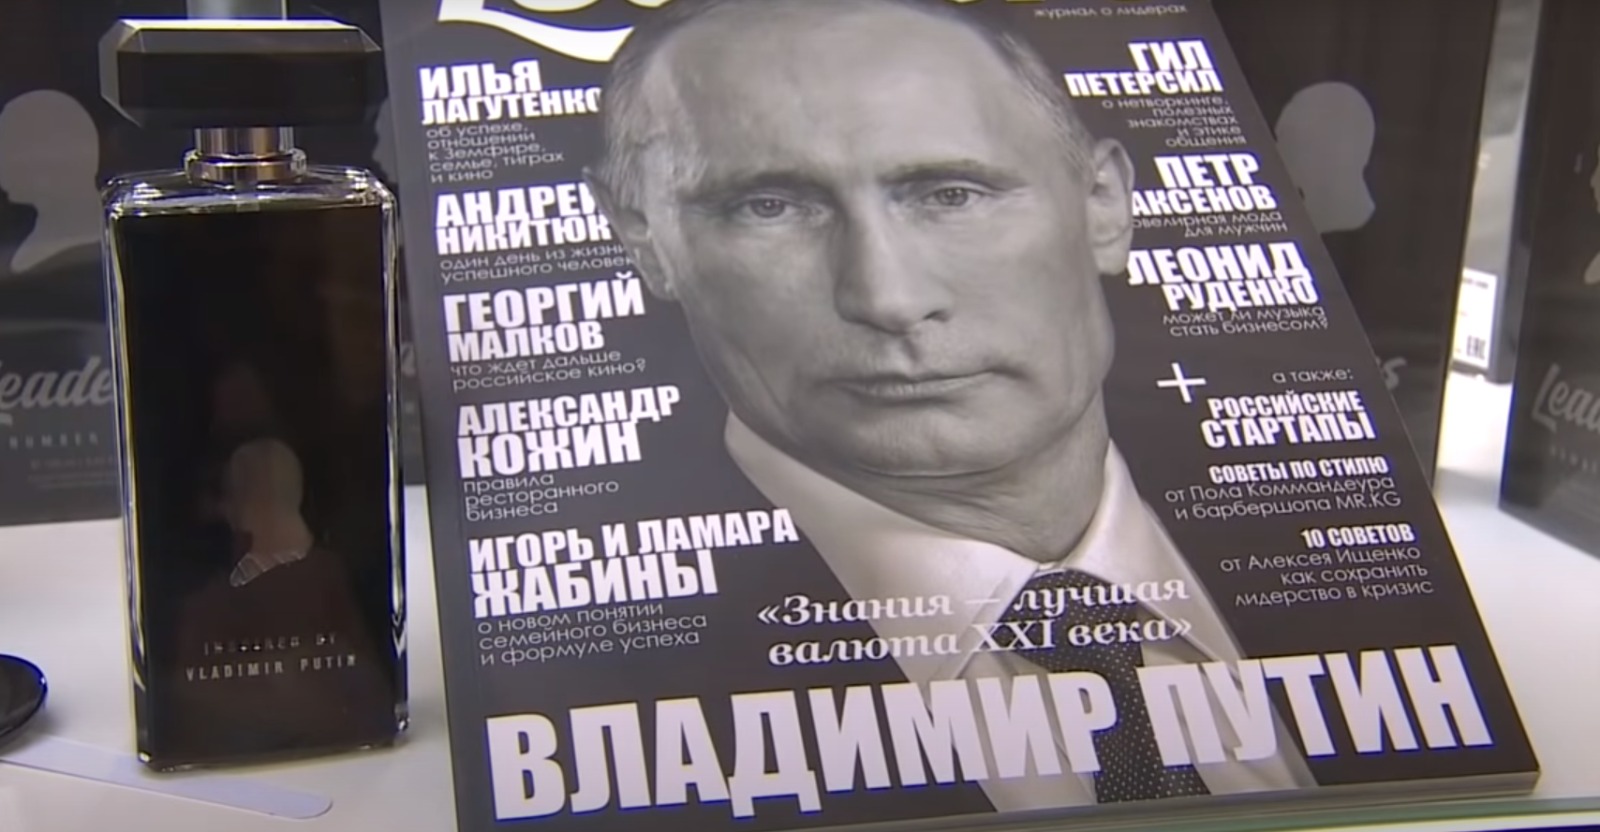 Ecco a voi Vladimir Vladimirovic Putin il Grande, imperatore di tutte le Russie amico dei neo-fascisti